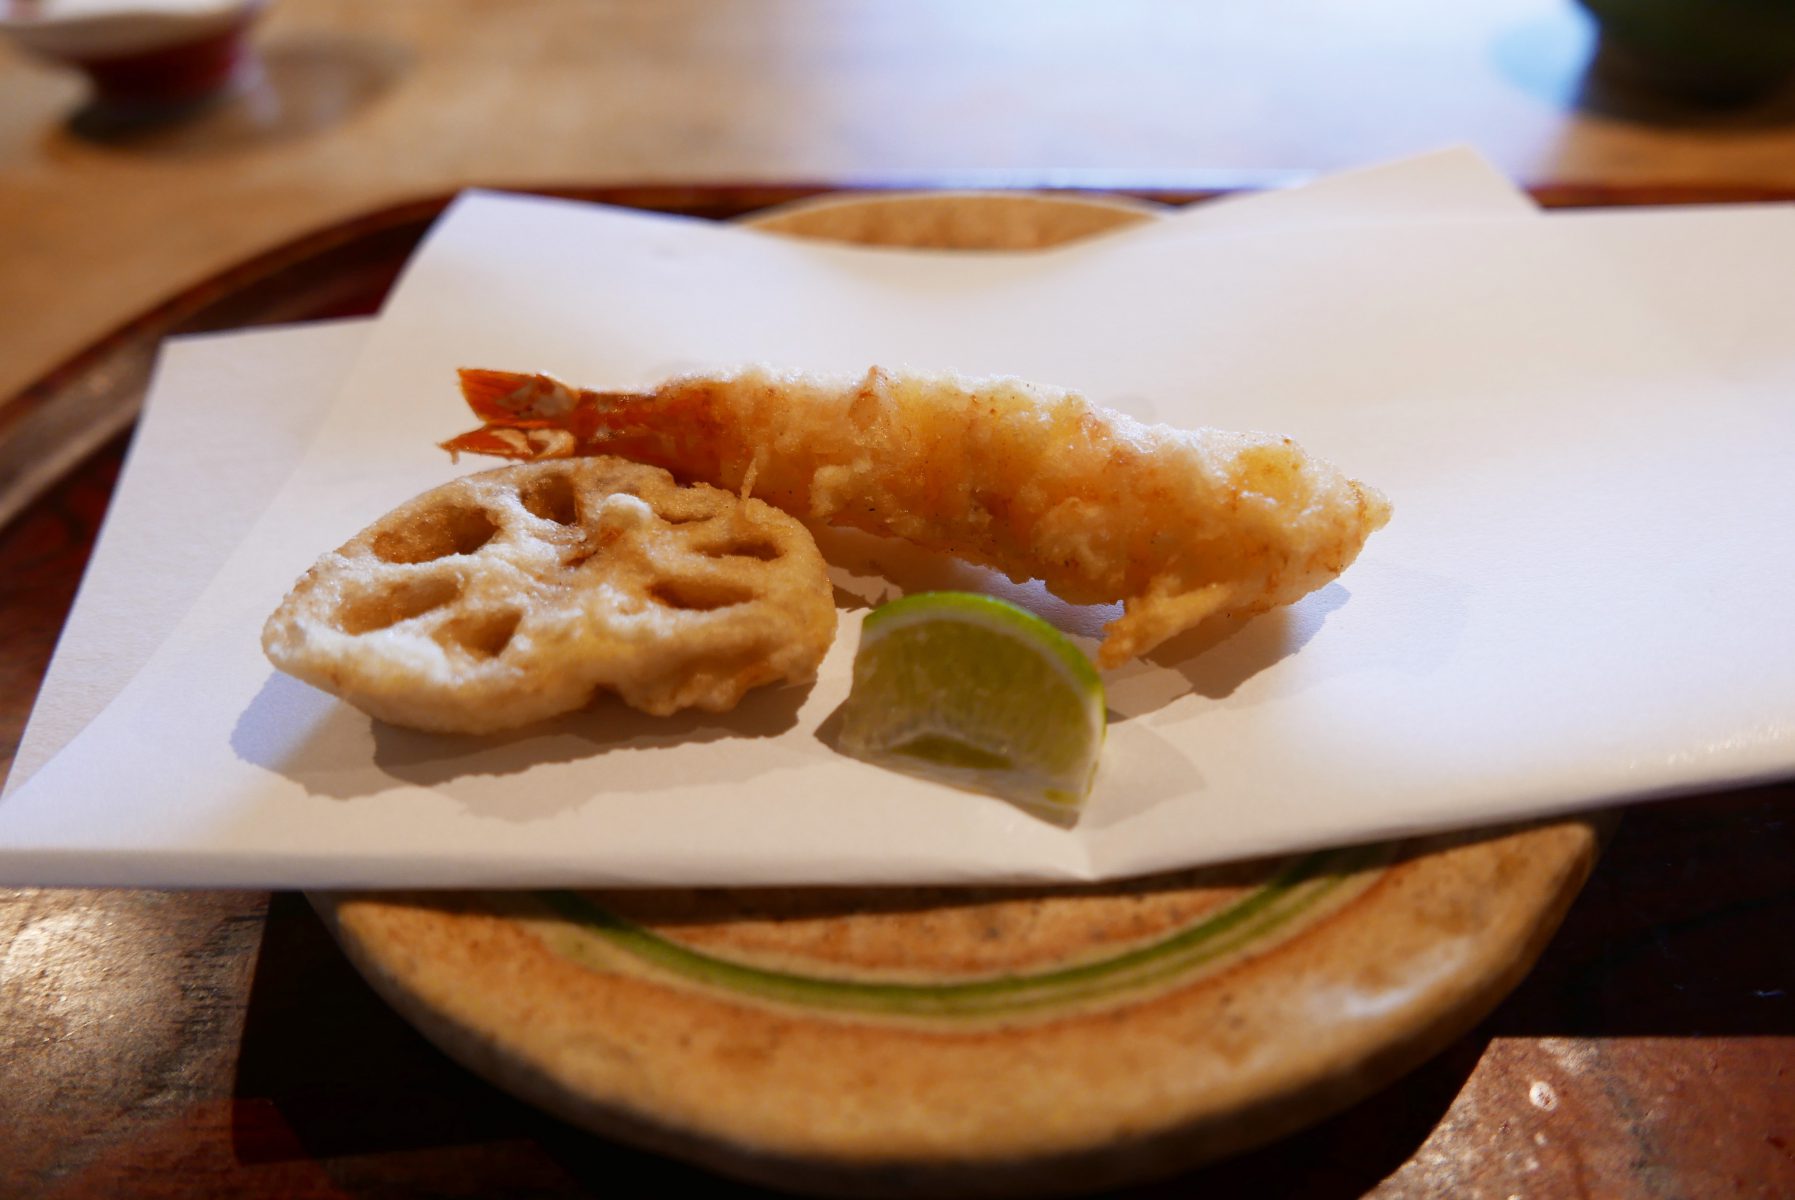 Lotus root and shrimp tempura